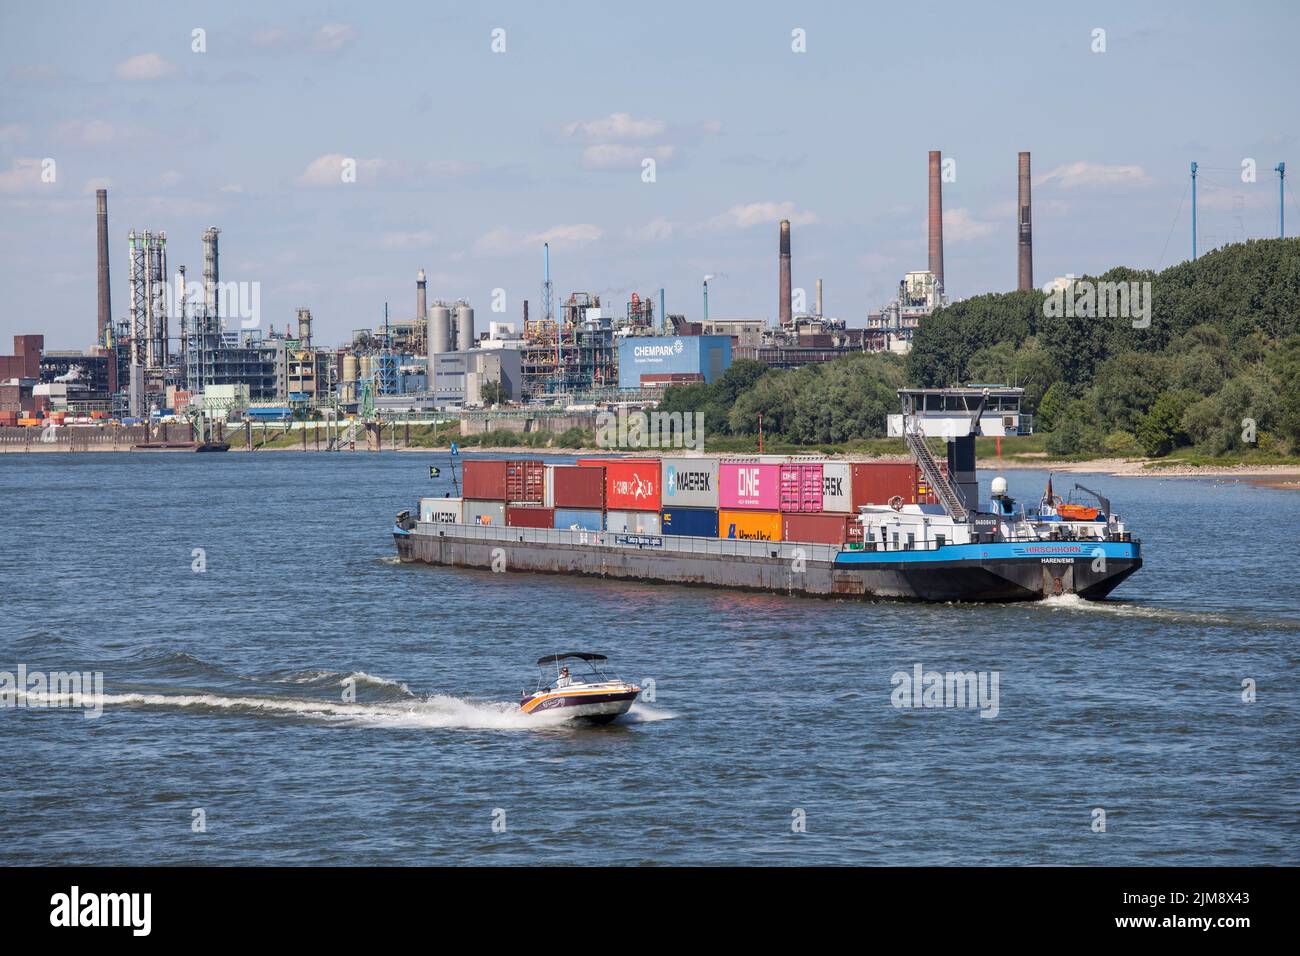 Containerschiff auf dem Rhein, Blick auf den Chempark, ehemals bekannt als Bayer-Werk, Leverkusen, Nordrhein-Westfalen, Deutschland. Containerschiff Stockfoto